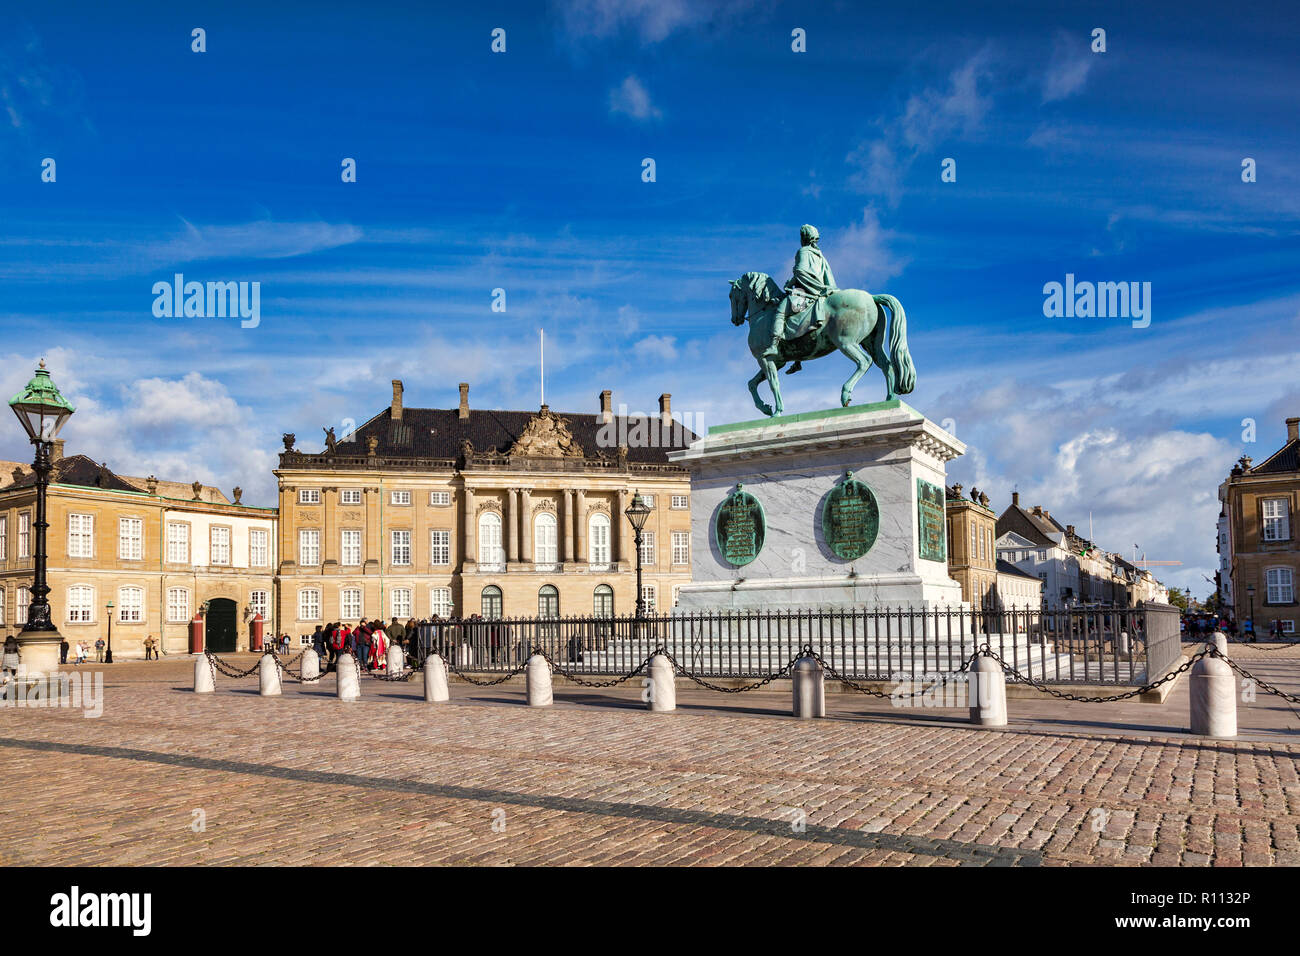 23 Settembre 2018: Copenhagen, Danimarca - Il Palazzo di Amalienborg e la piazza e la statua equestre di Re Frederik V su una soleggiata giornata autunnale. Foto Stock